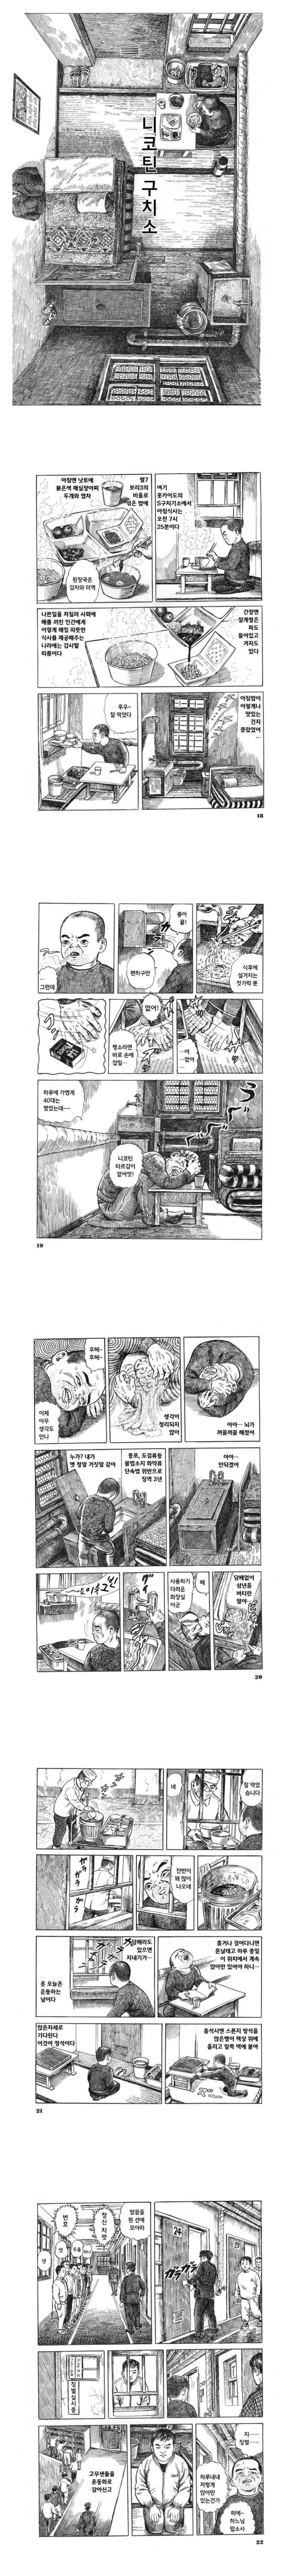 일본 교도소 경험자가 그린 만화